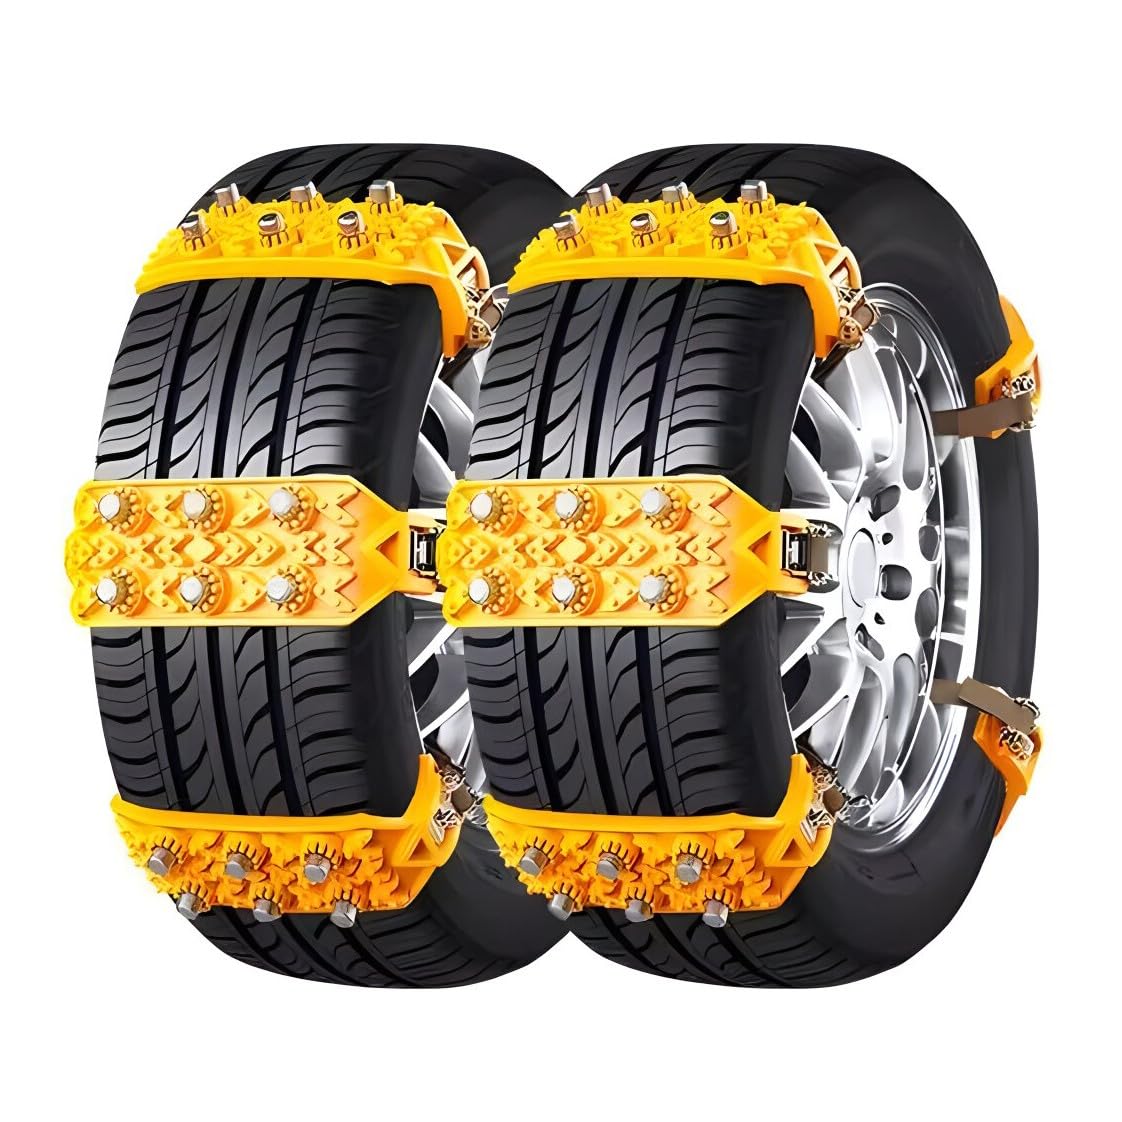 Auto-Schneeketten für Ferrar𝘪 GTC4 Lusso,Schneereifen Ketten,Rutschfeste, verstellbare ReifenkettenNotfalllösung Traktionsketten 10-teiliges von Generic